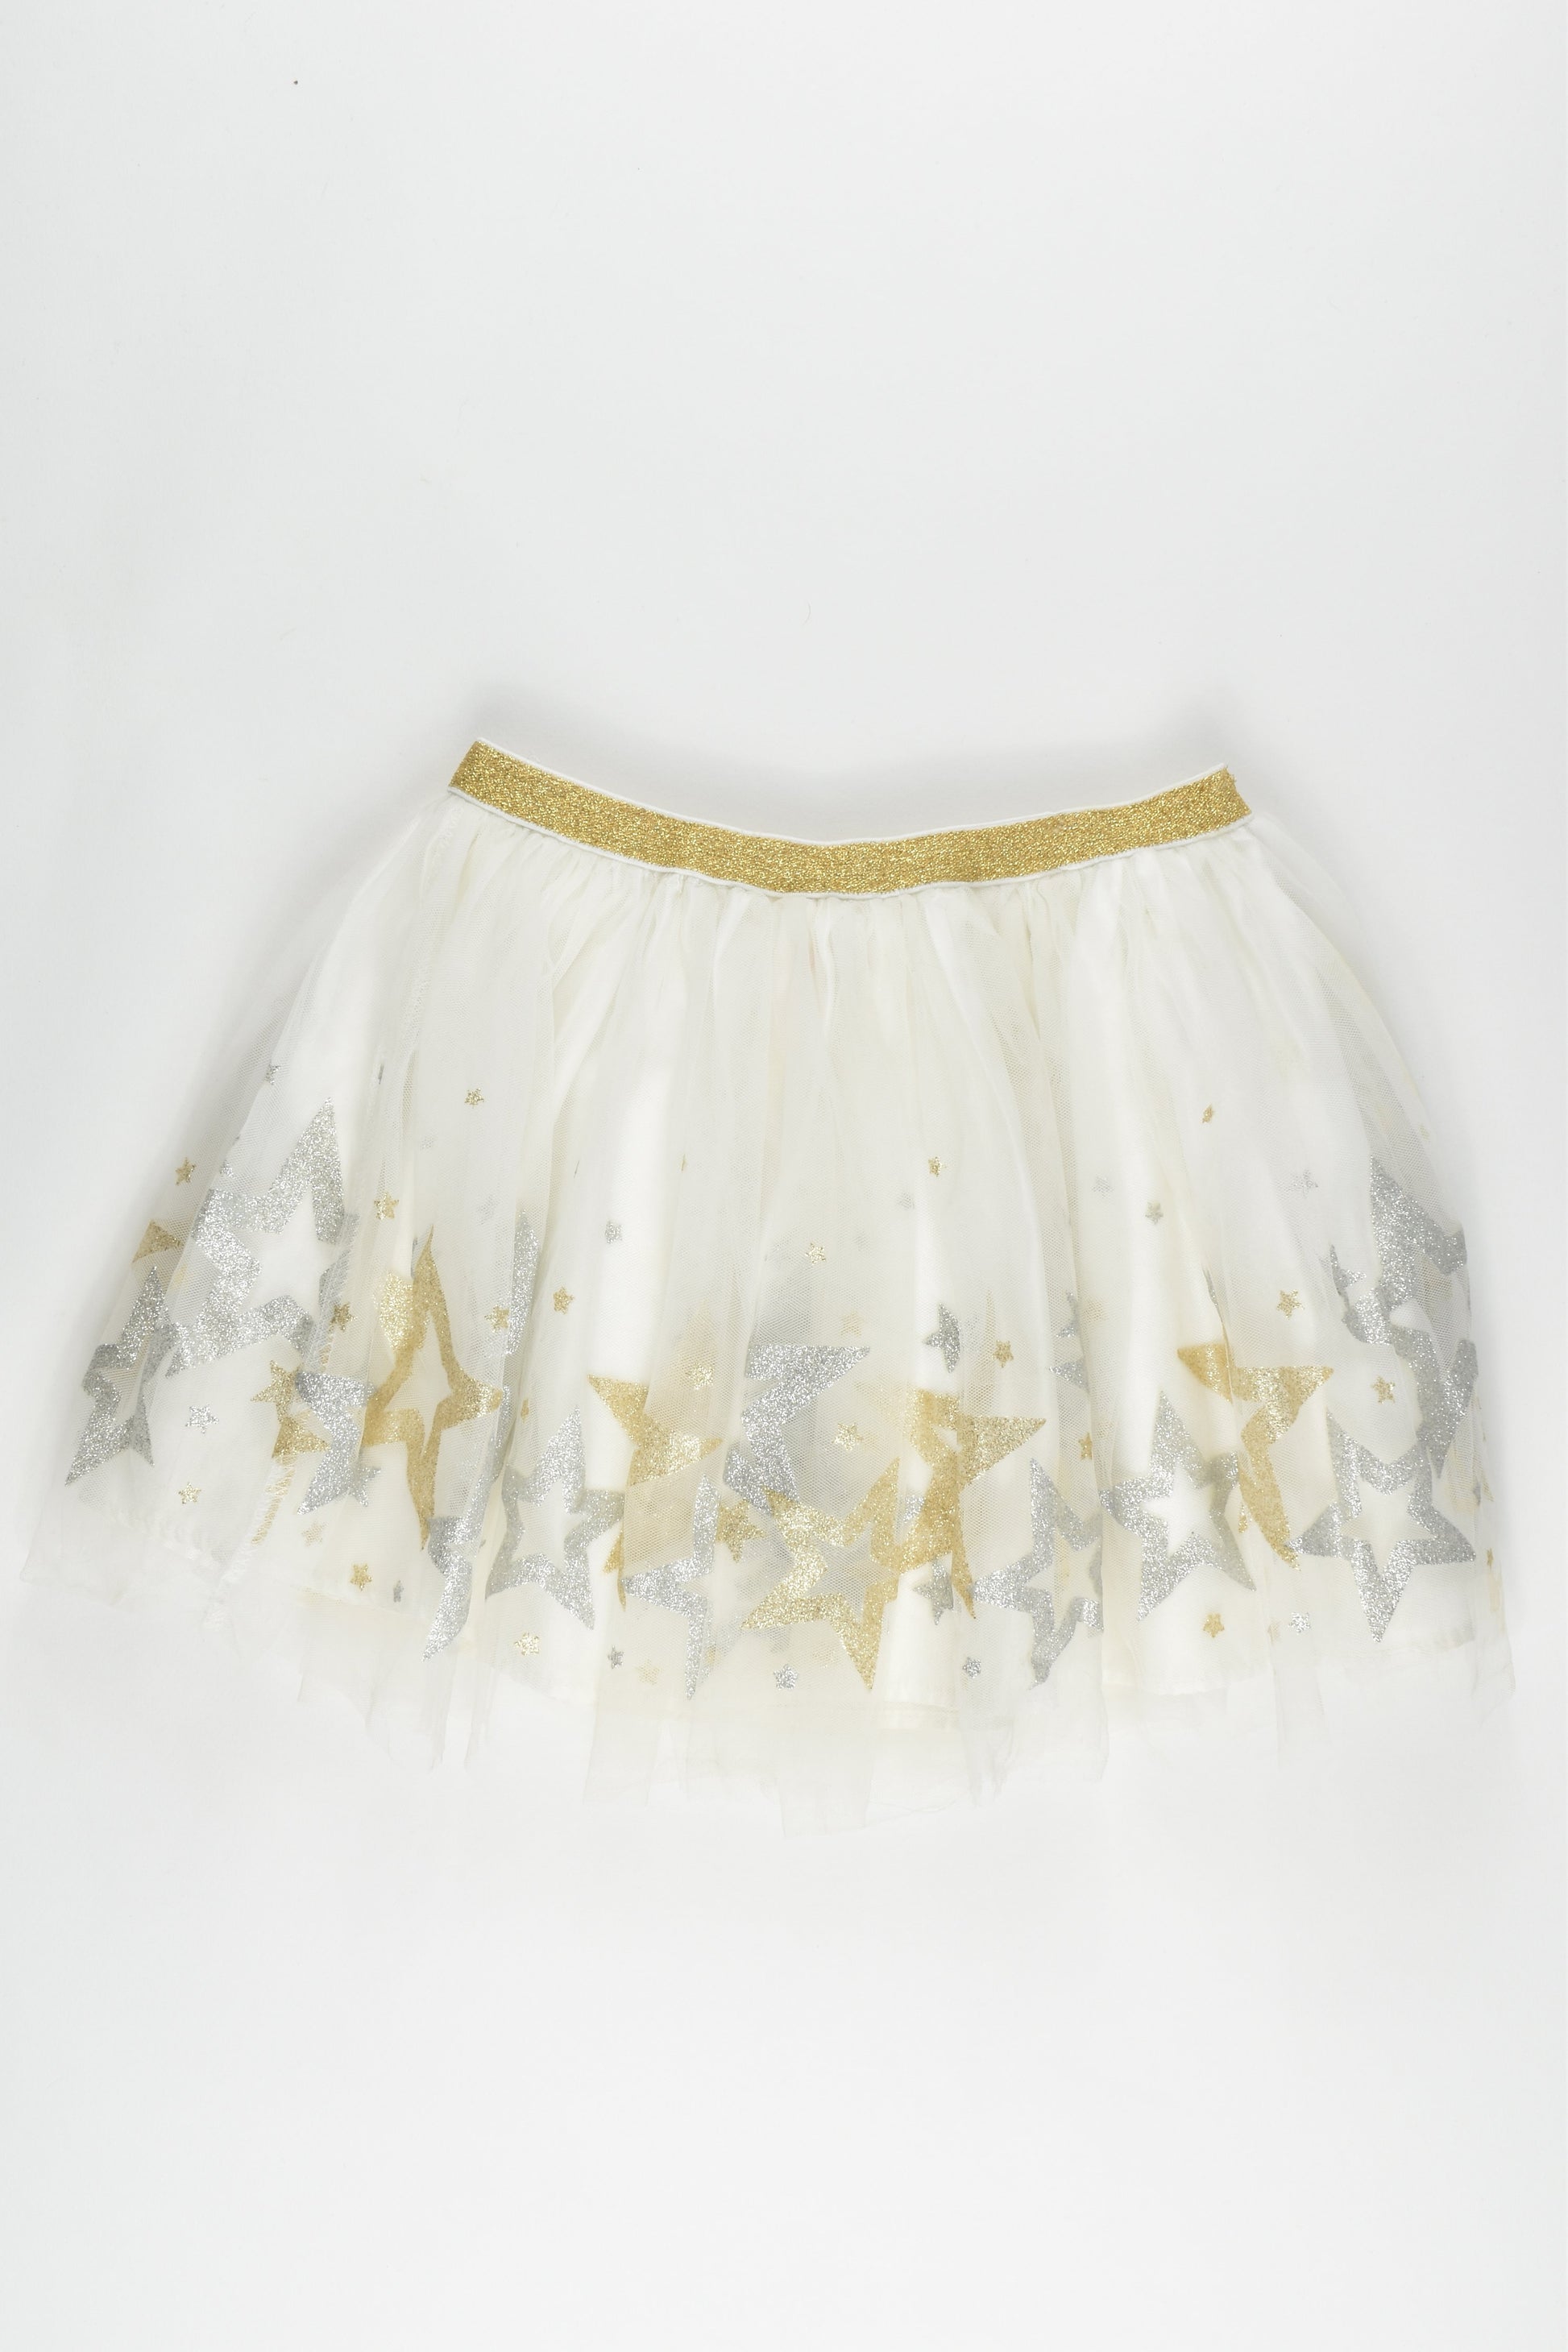 Cotton On Kids Size 3-4 Tulle Skirt